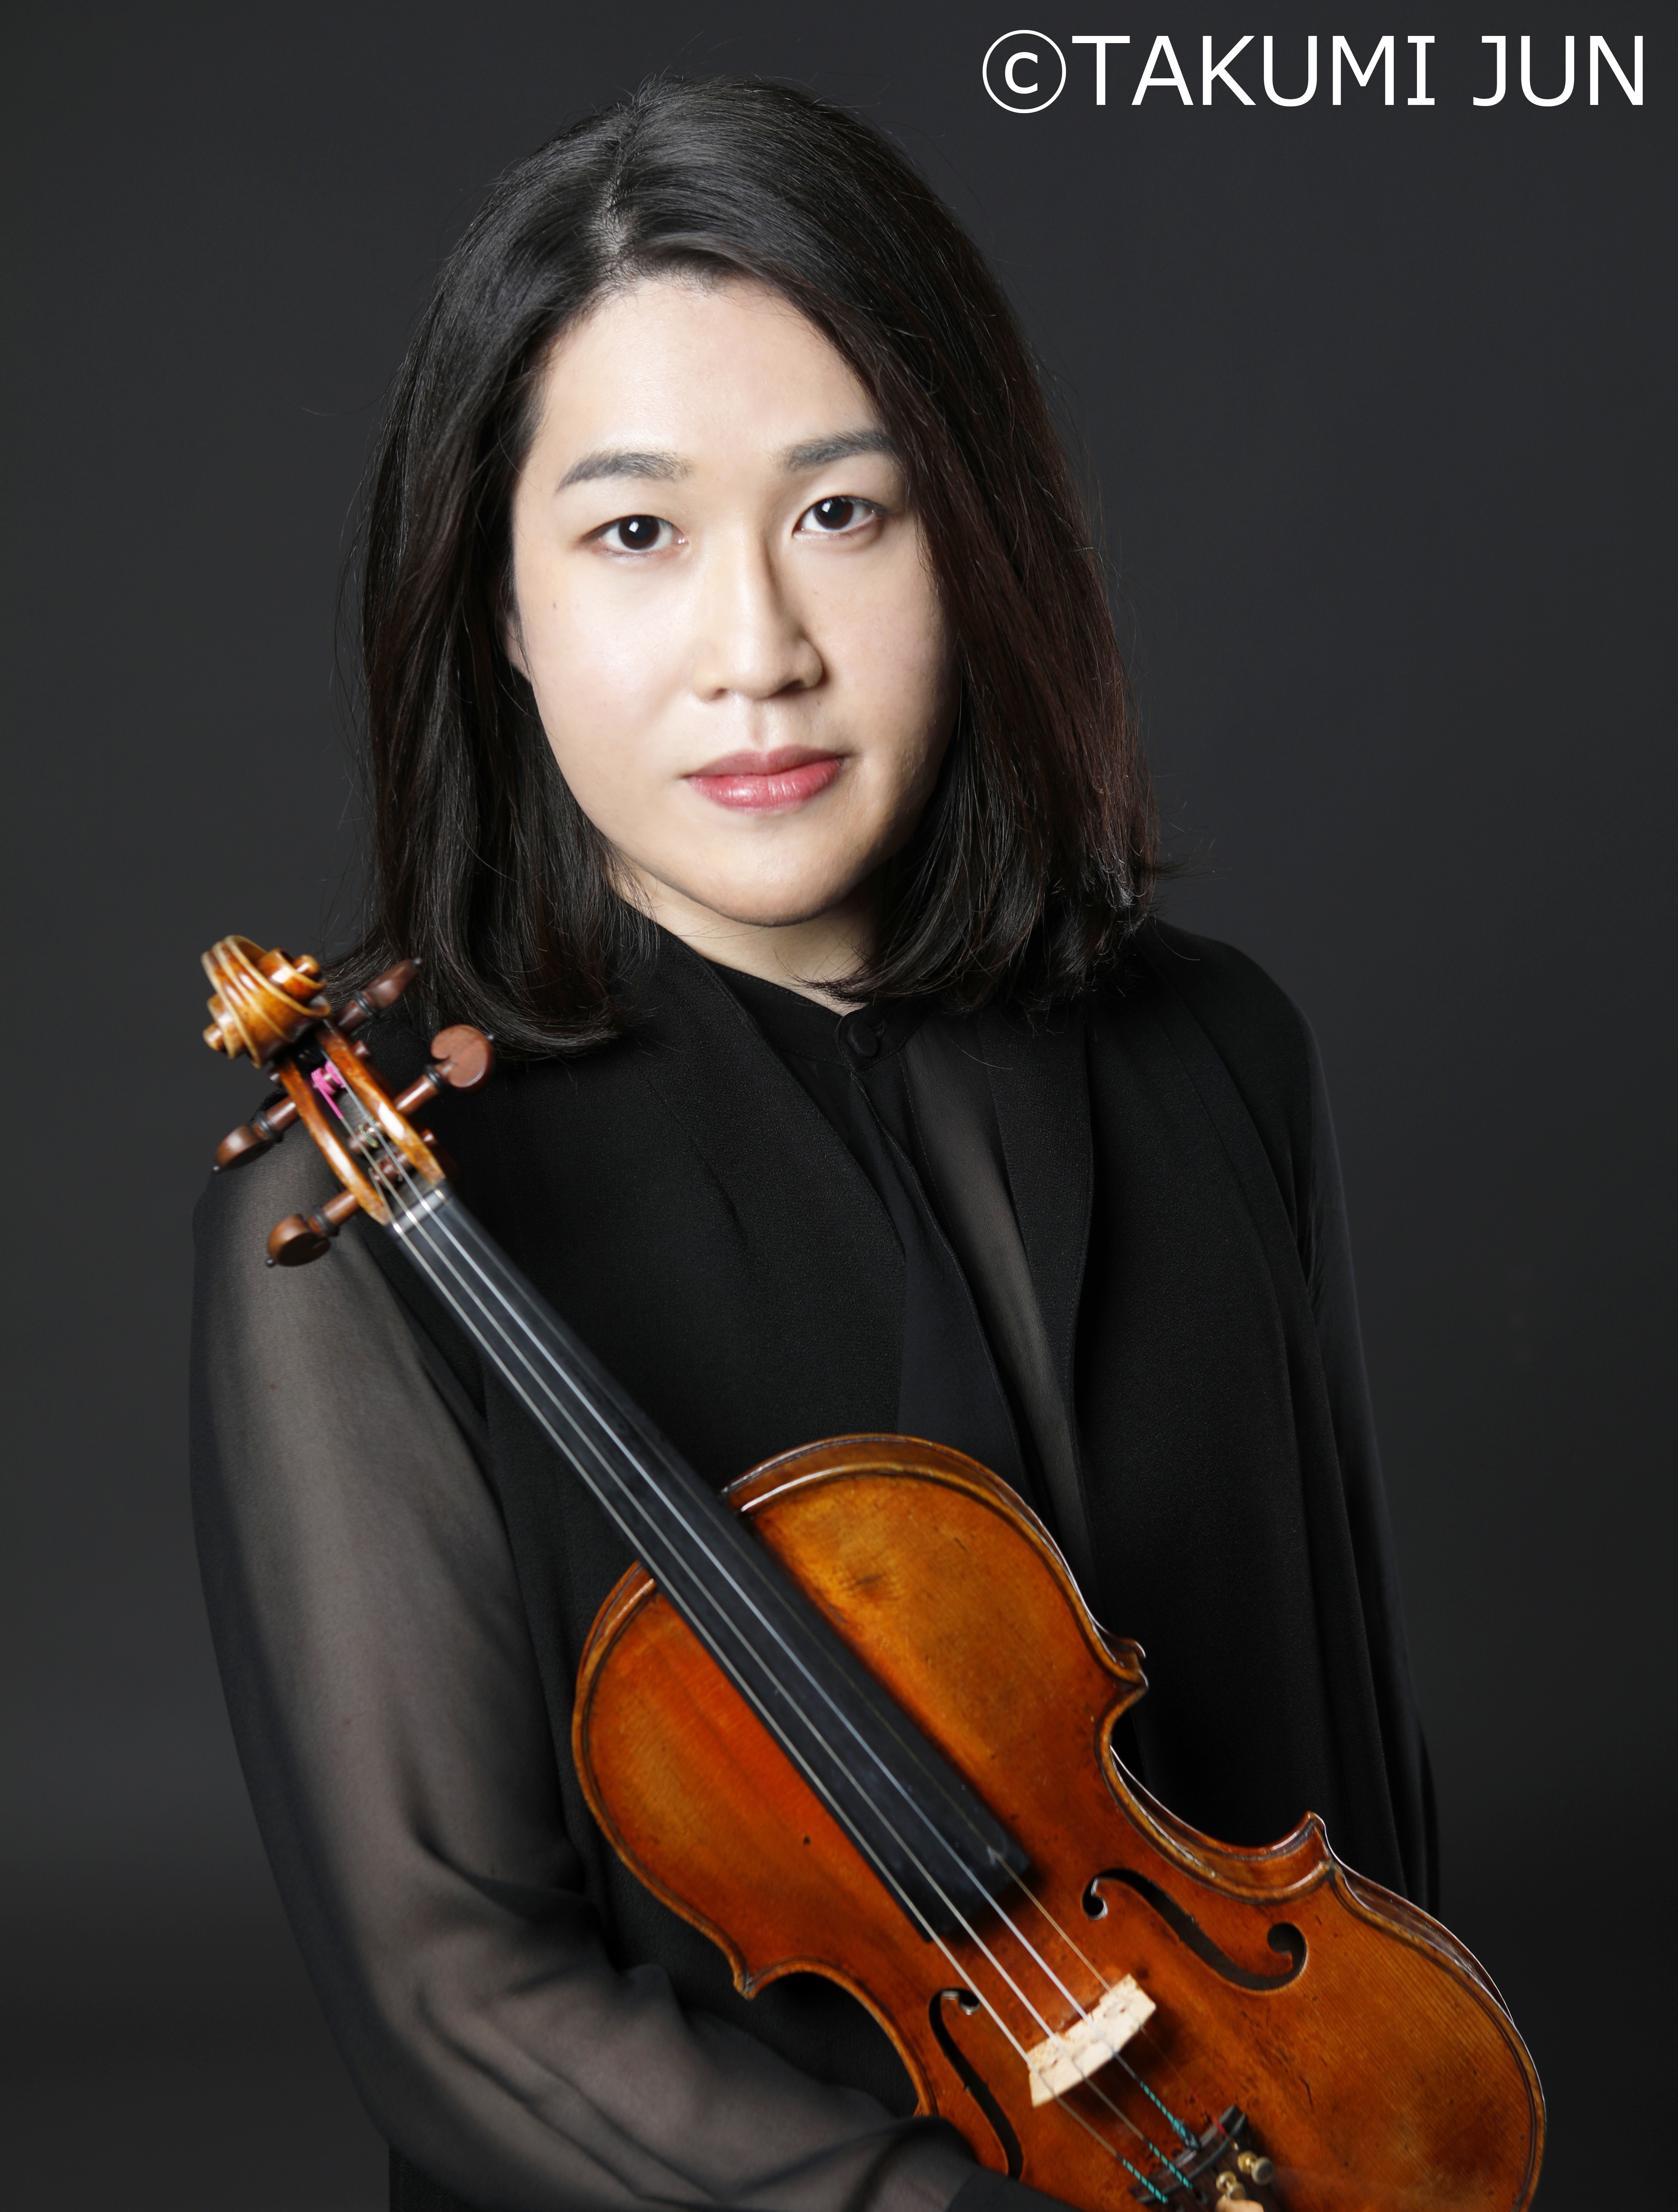 周防 亮介（ヴァイオリン）　Ryosuke Suho, Violin